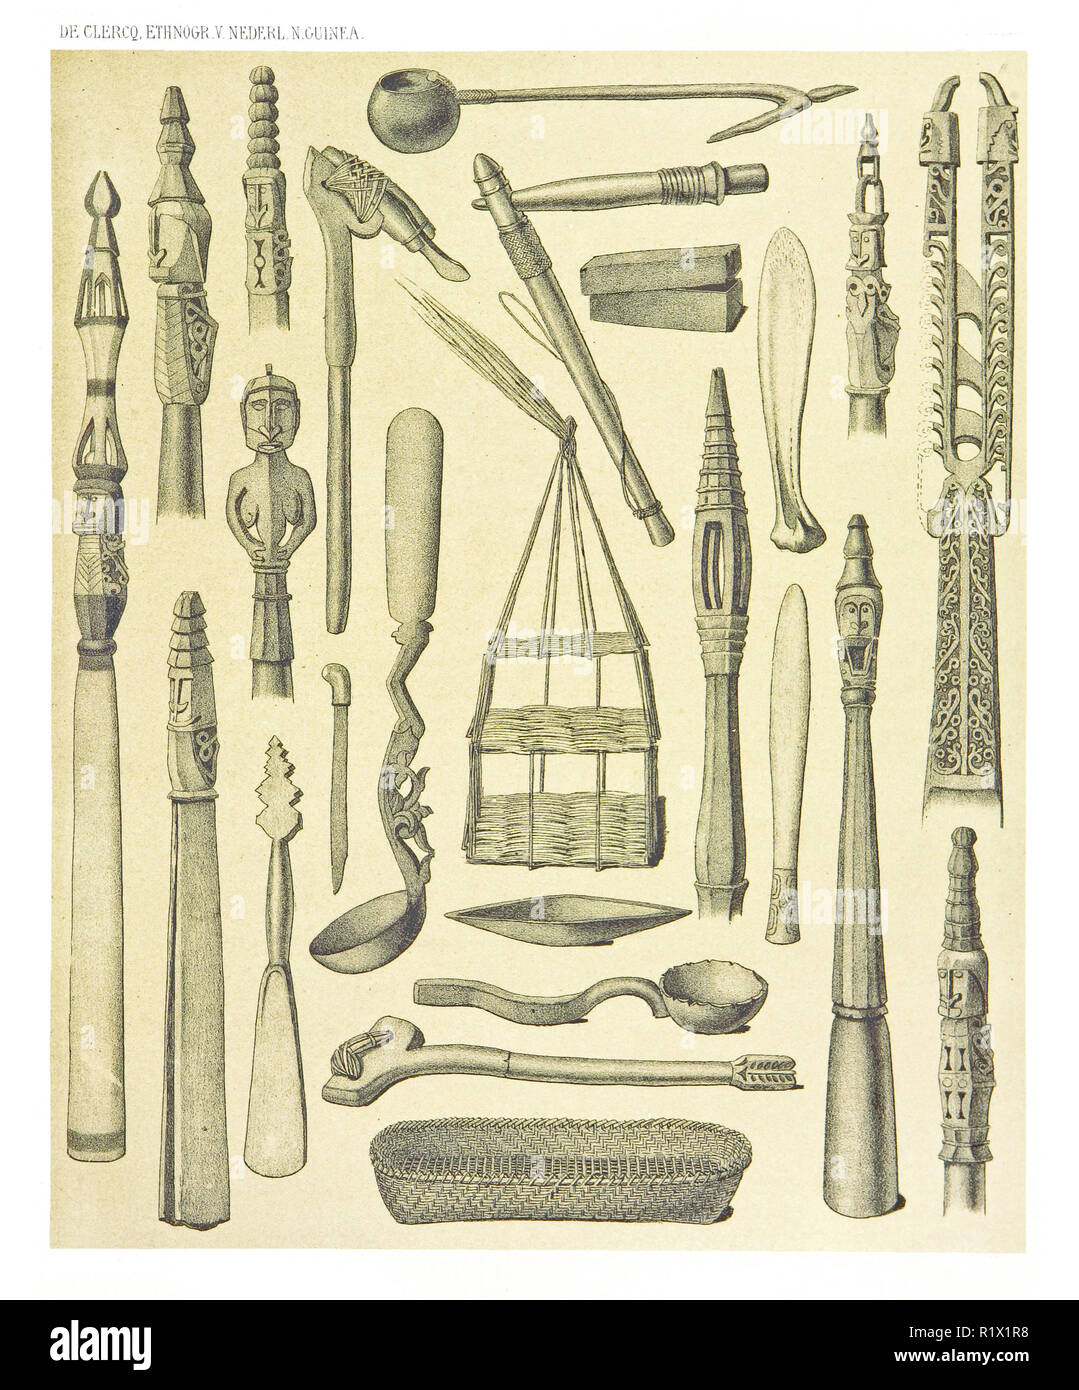 Illustration d'objets ethniques de l'Ouest et de la côte nord de la Nouvelle-Guinée néerlandaise. Par F.S.A. De Clercq et J.D.E. Leiden 1893, Schmeltz Banque D'Images